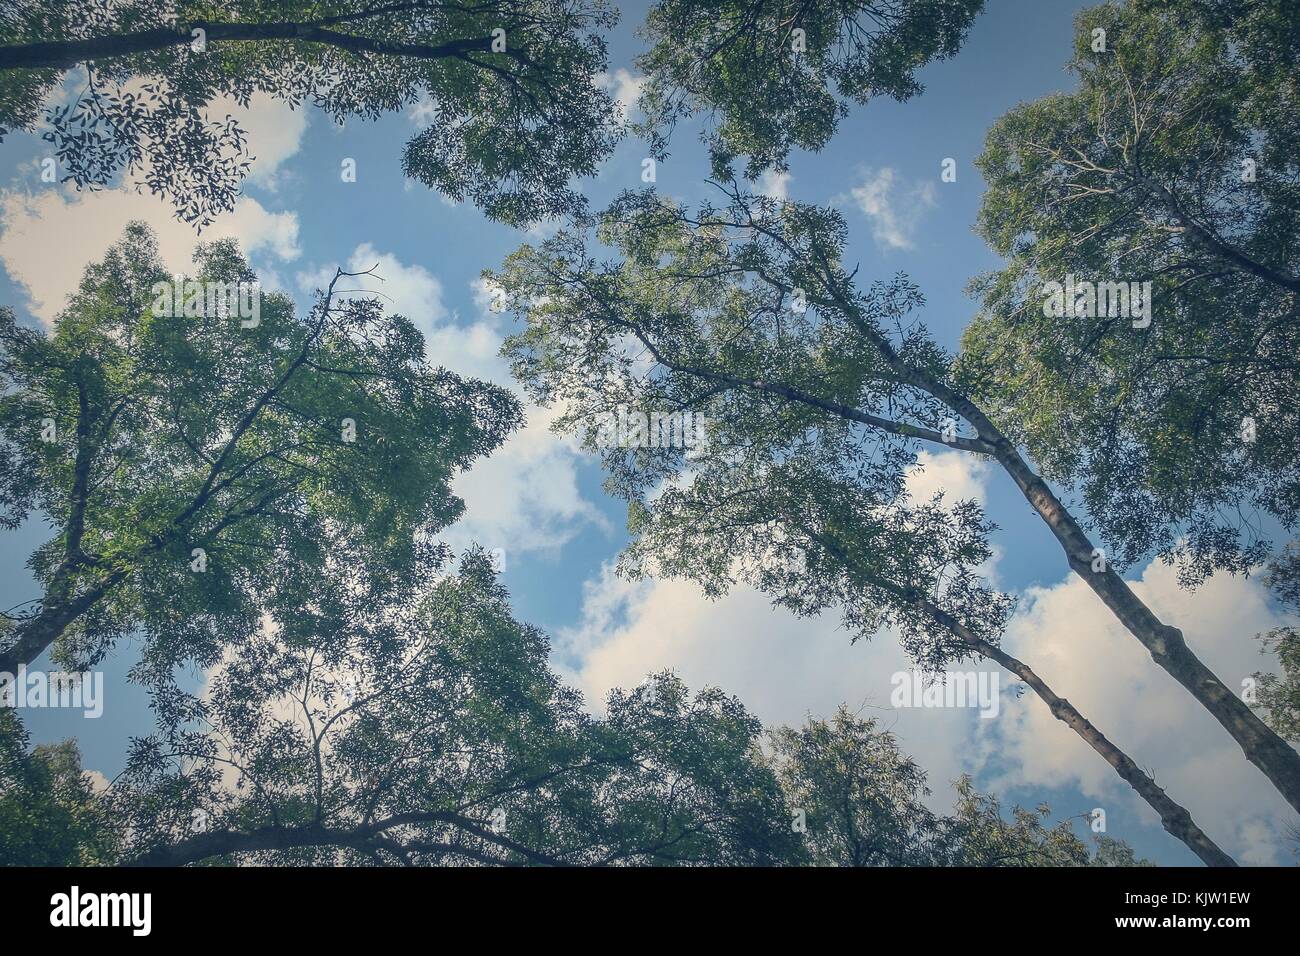 Die Zweige der riesigen Bäume scheinen zugenommen zu haben die Wolken des Himmels zu erreichen. Stockfoto